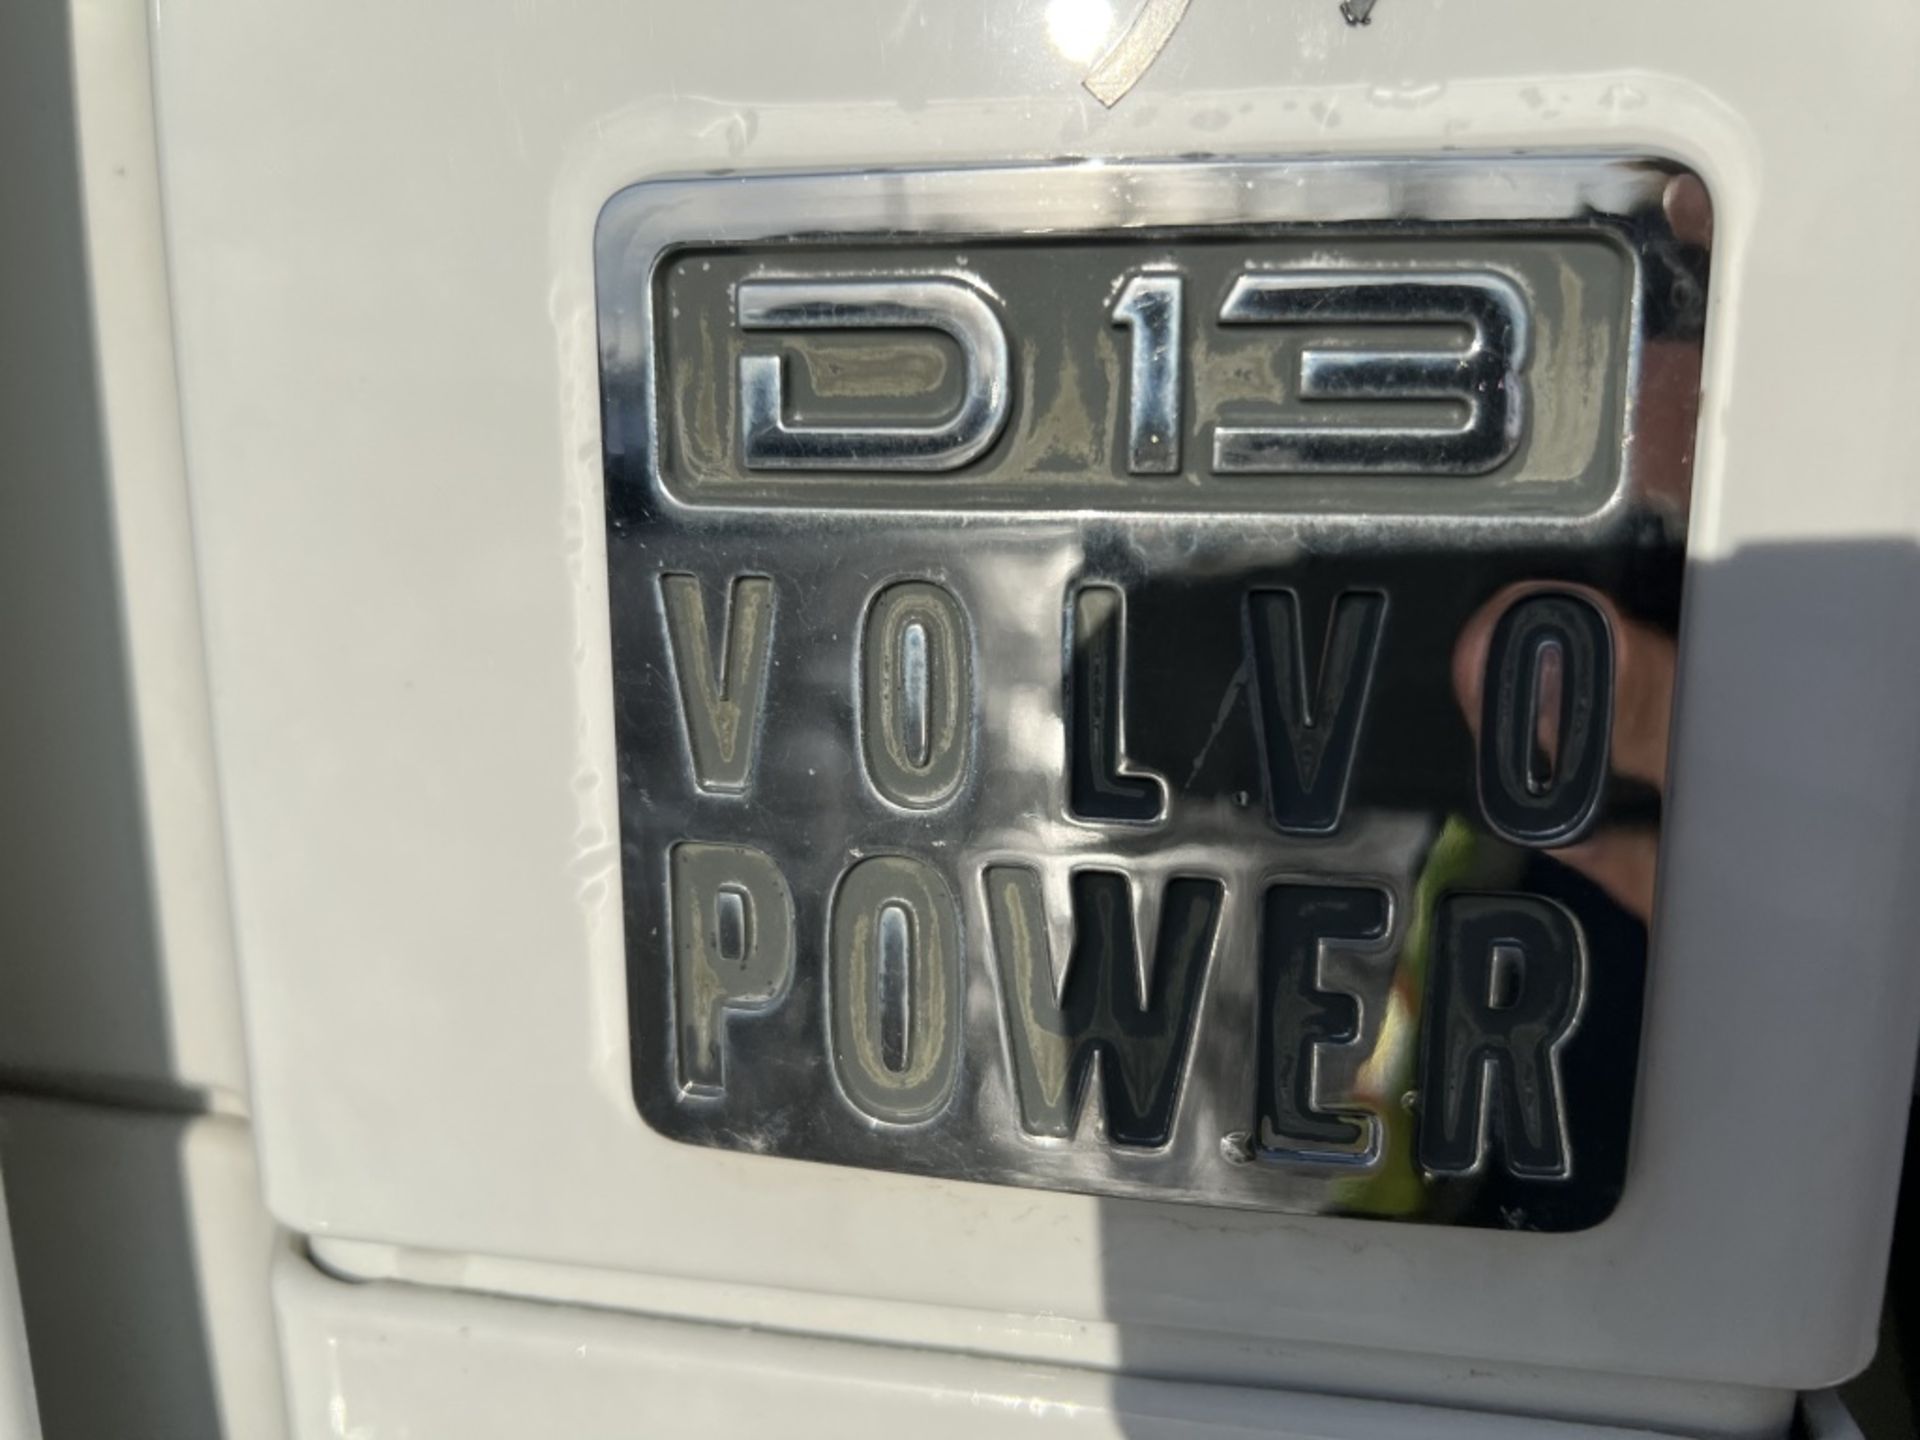 2013 Volvo Tri-Axle Dump Truck - Image 9 of 39